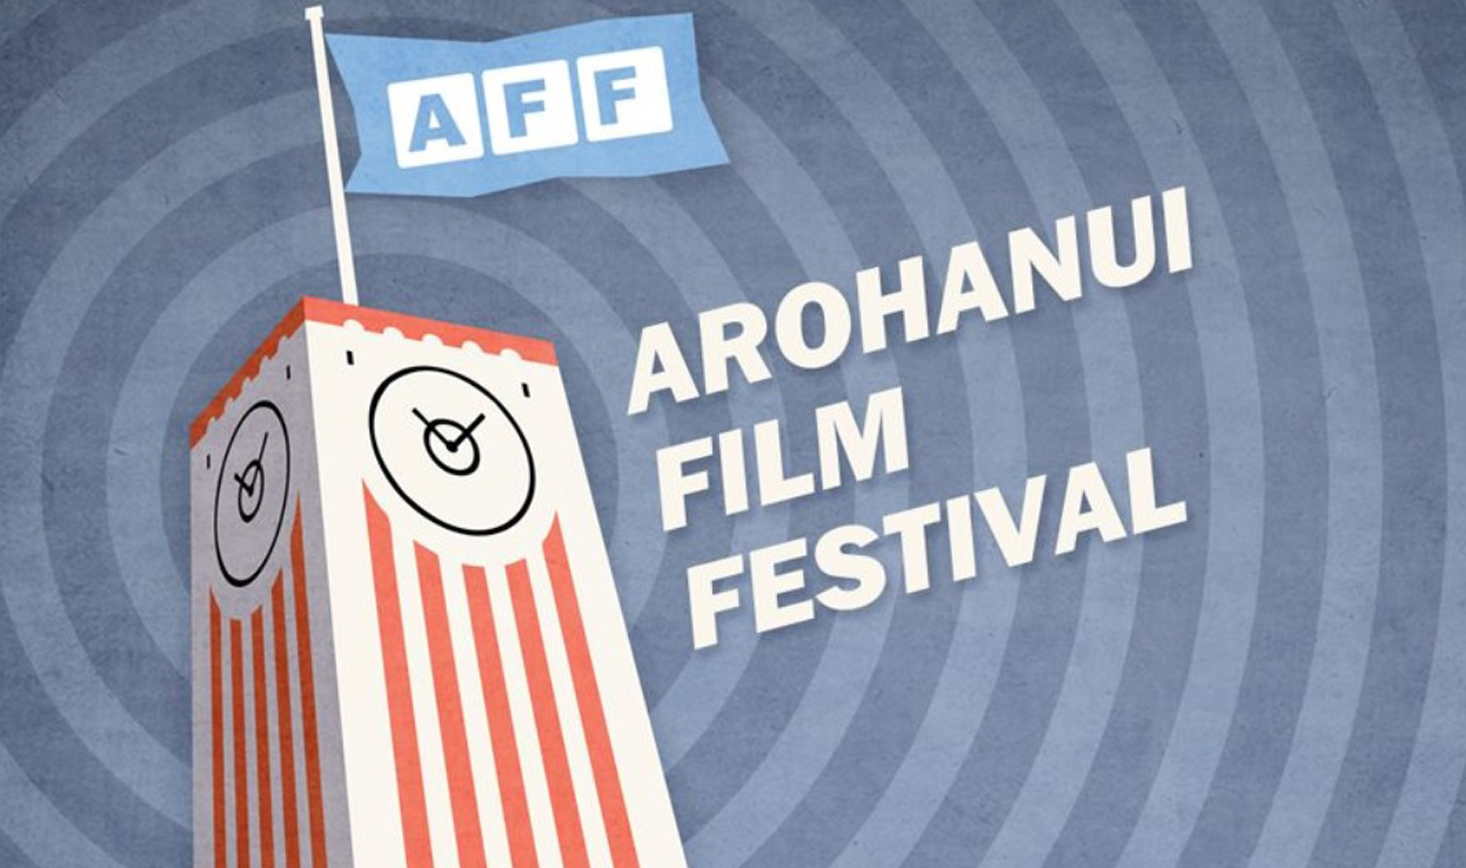 Arohanui Film Festival